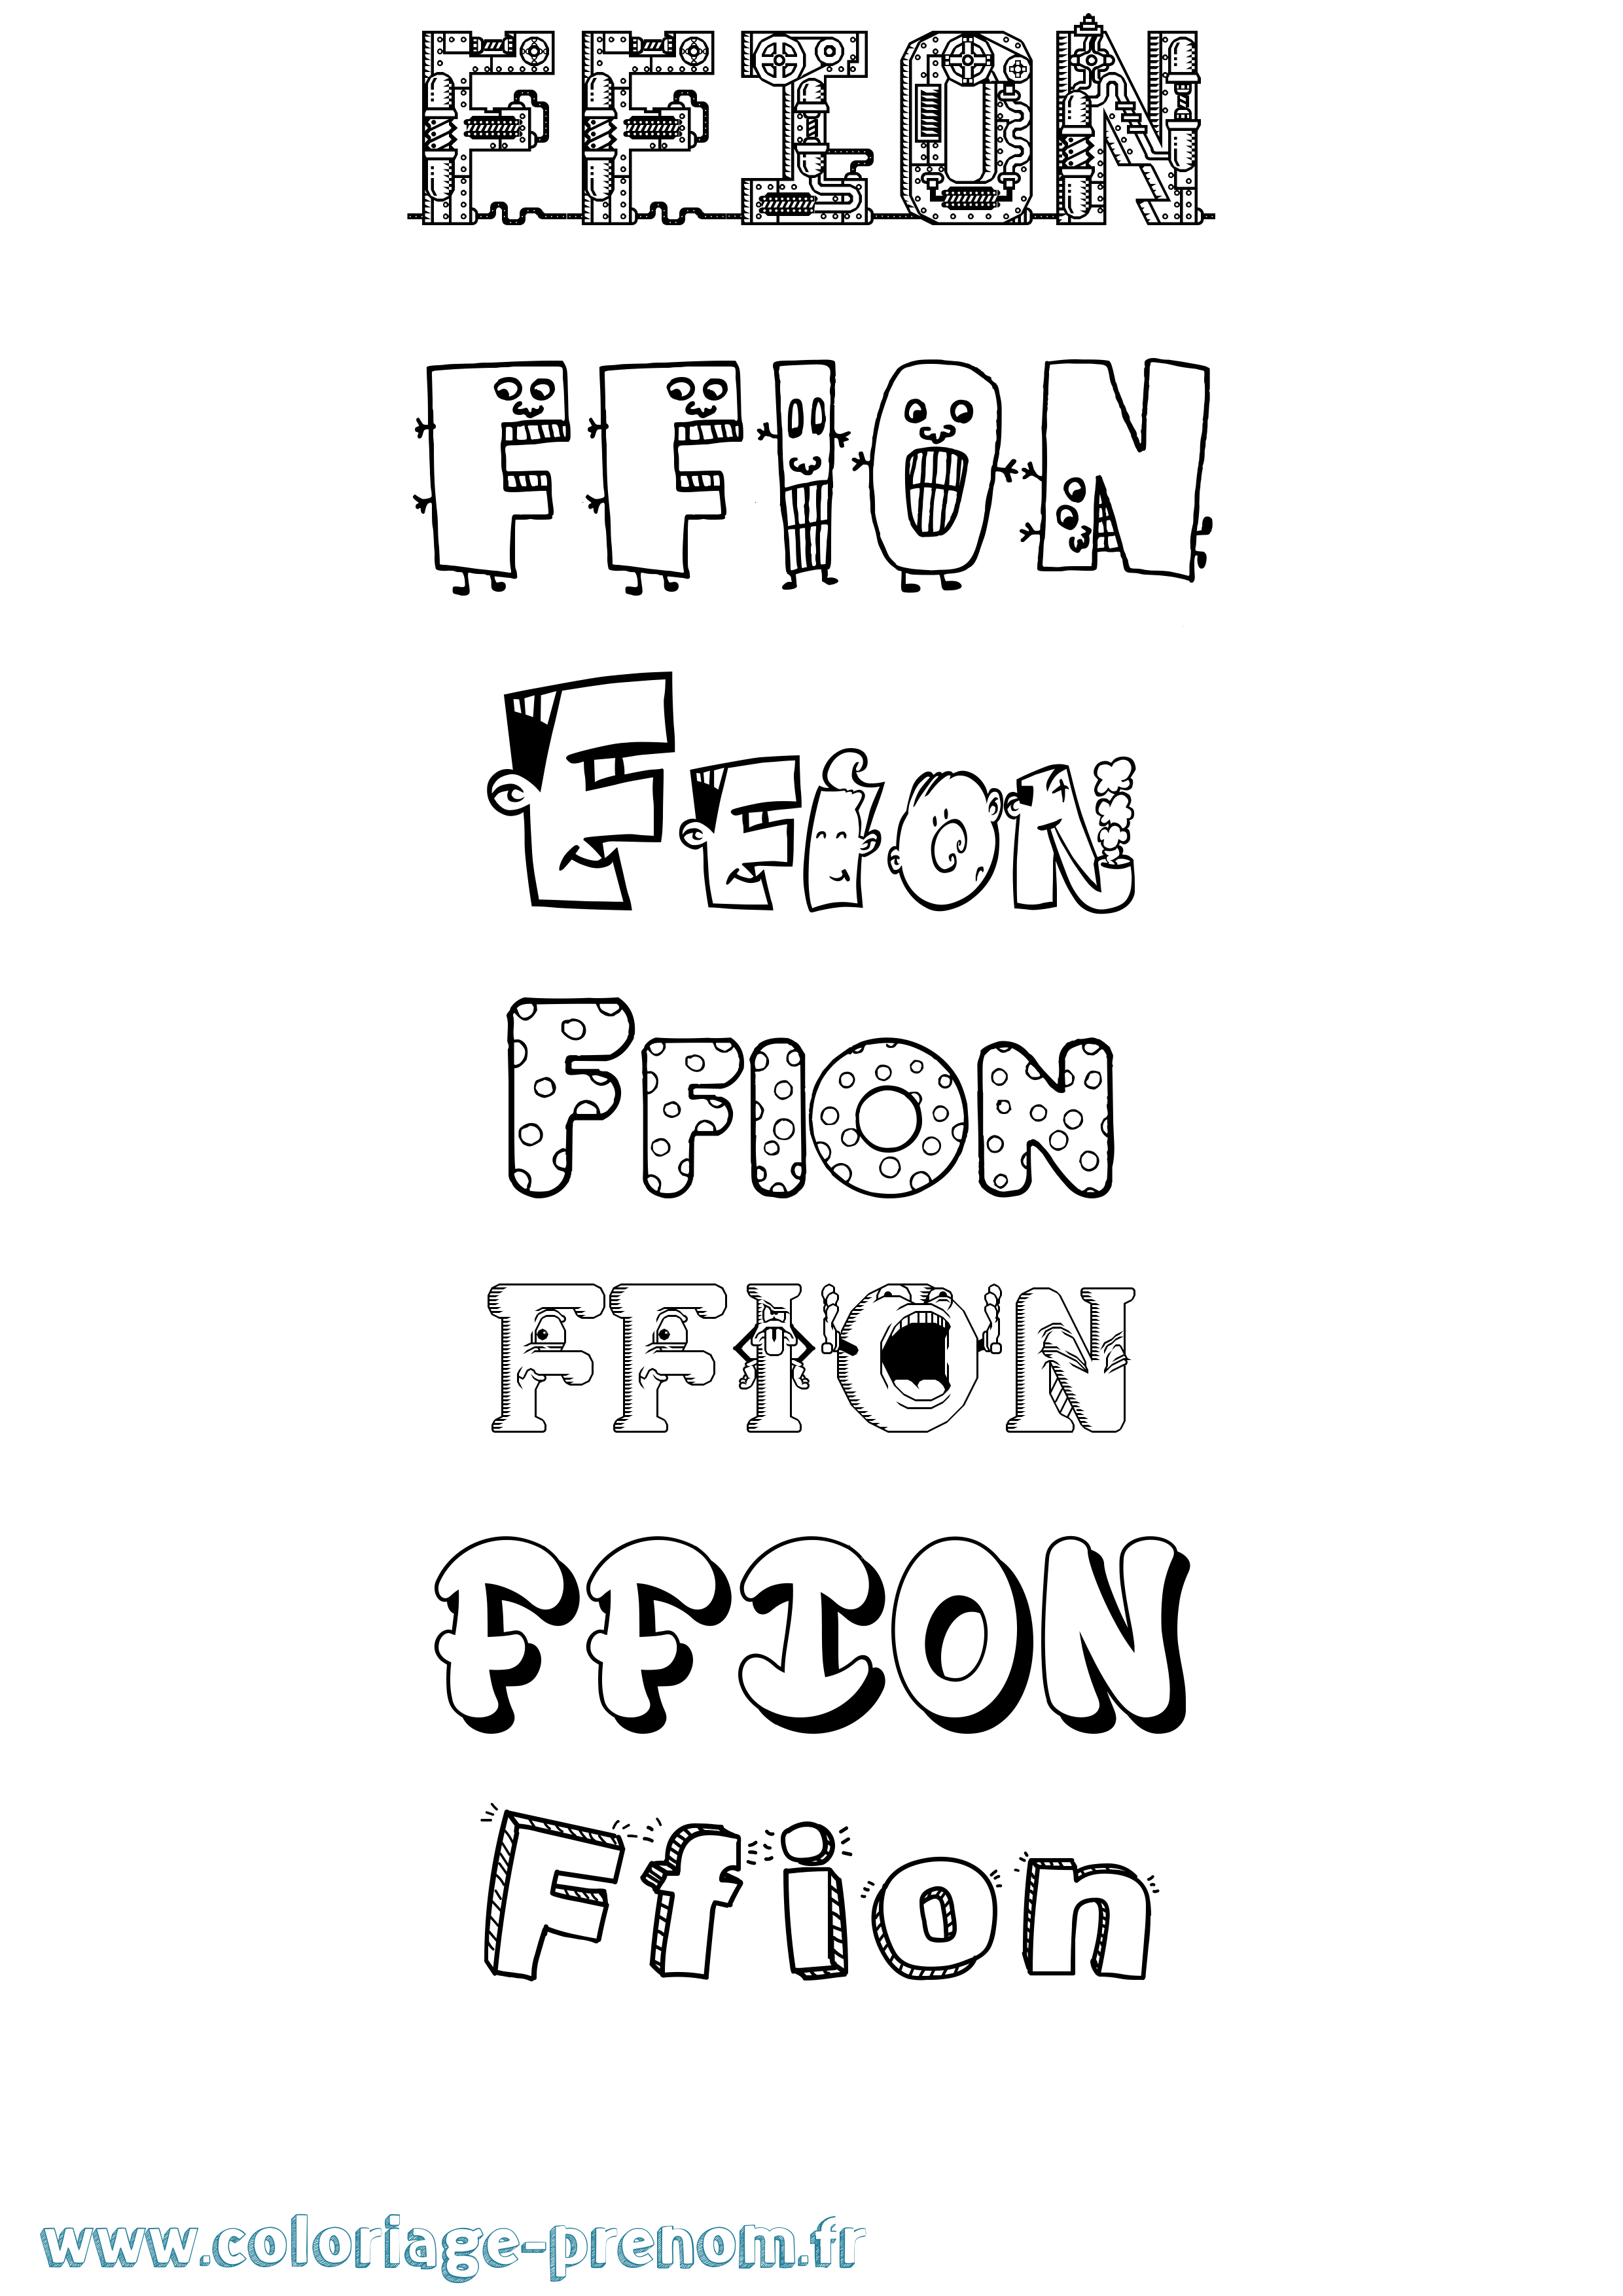 Coloriage prénom Ffion Fun